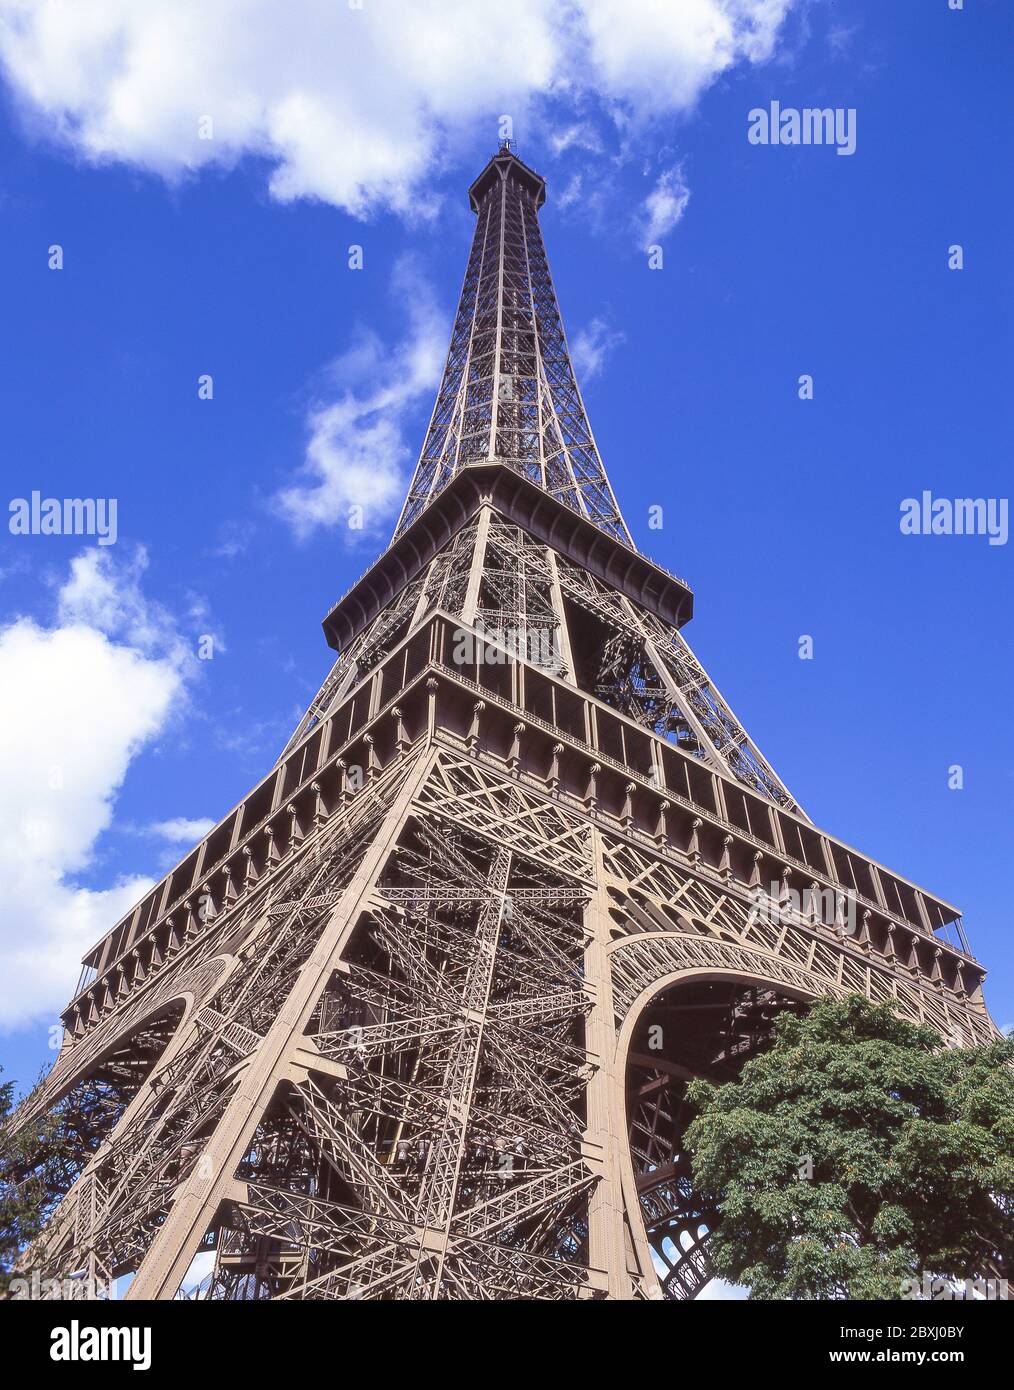 The Eiffel Tower (Tour Eiffel), Champ de Mars, Paris, Île-de-France, France Stock Photo